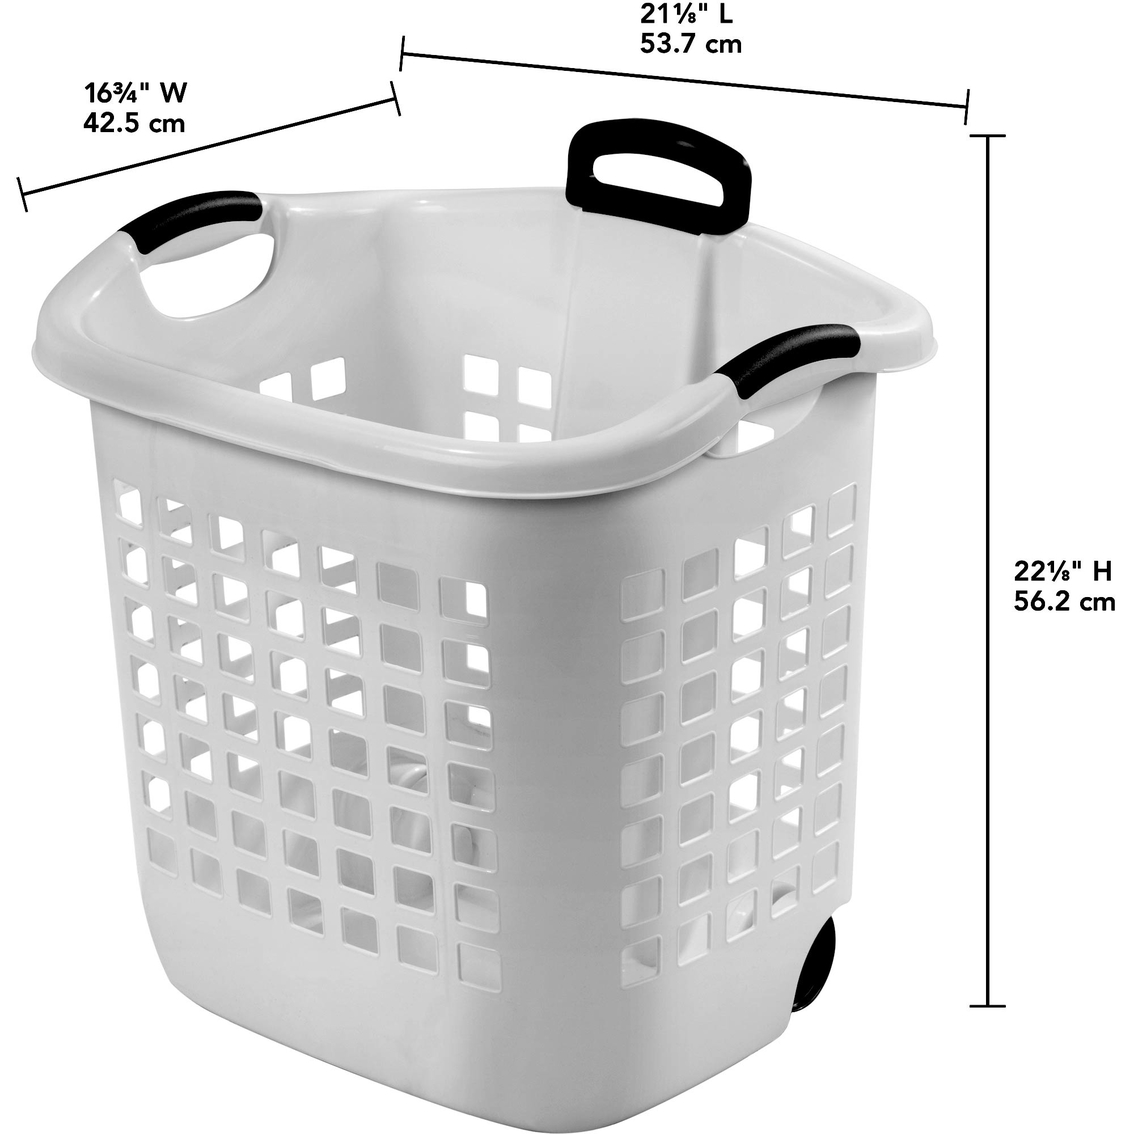 Sterilite 1.75 Bushel Ultra Wheeled Laundry Basket - Image 2 of 6